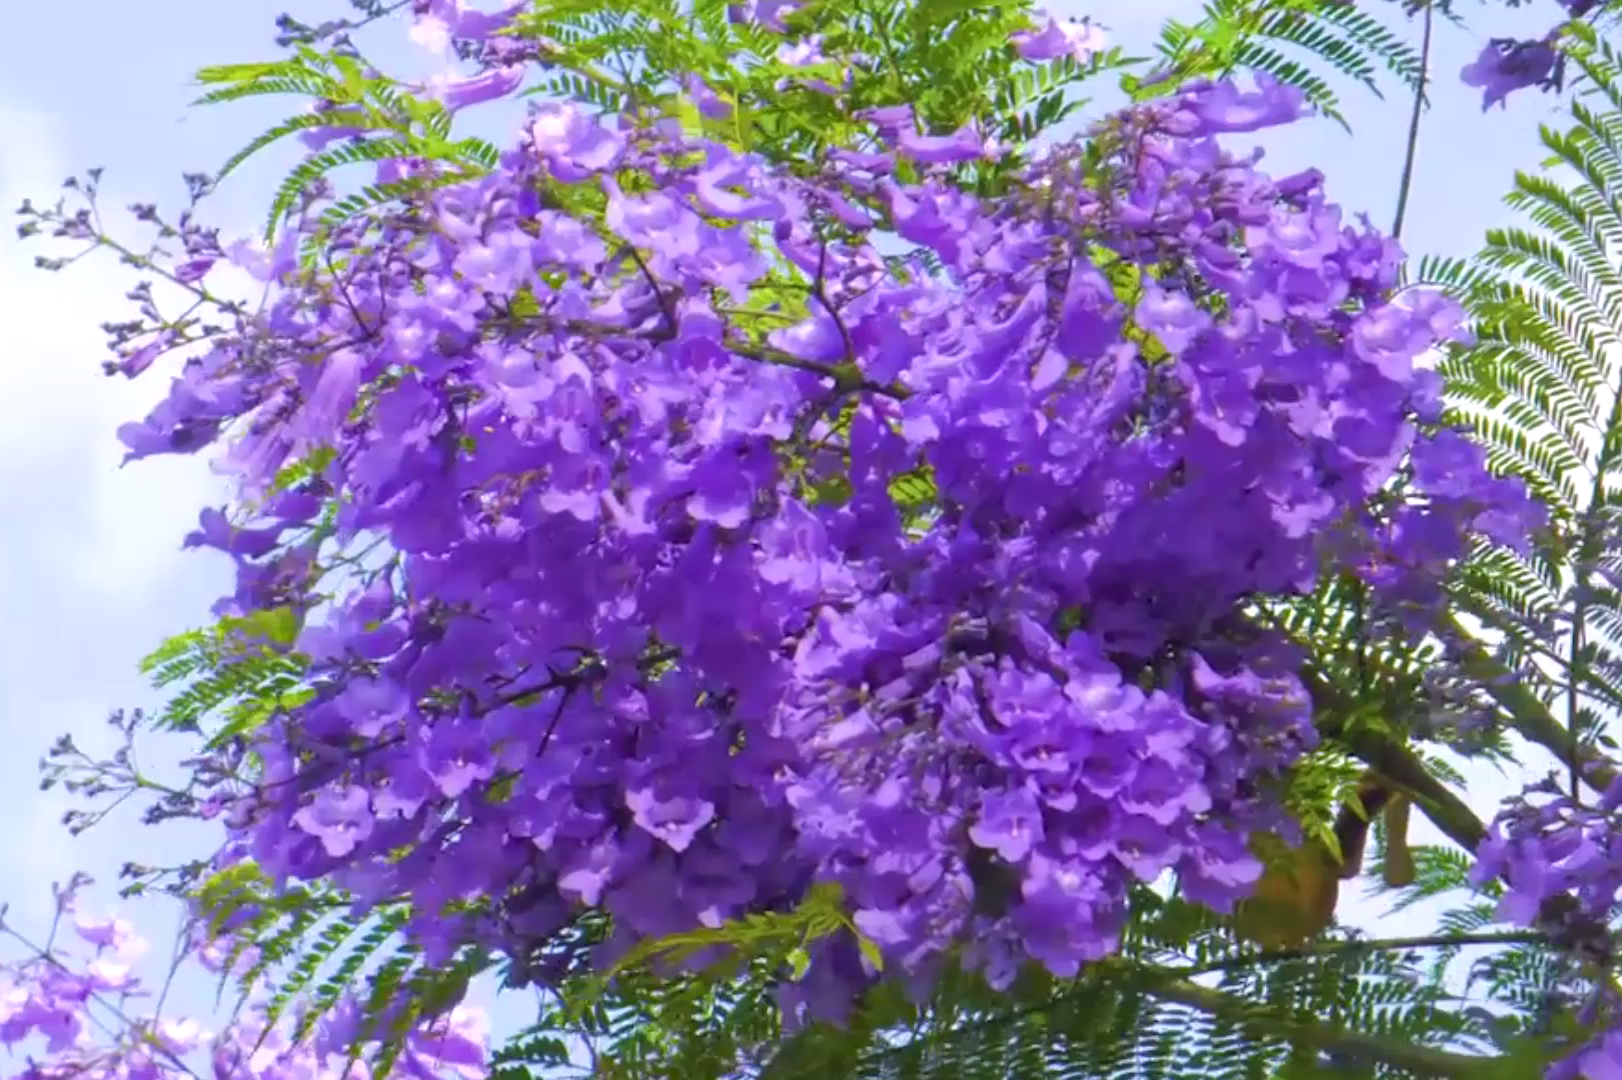 实拍昆明蓝楹花,成片紫色的花朵,真的很浪漫!